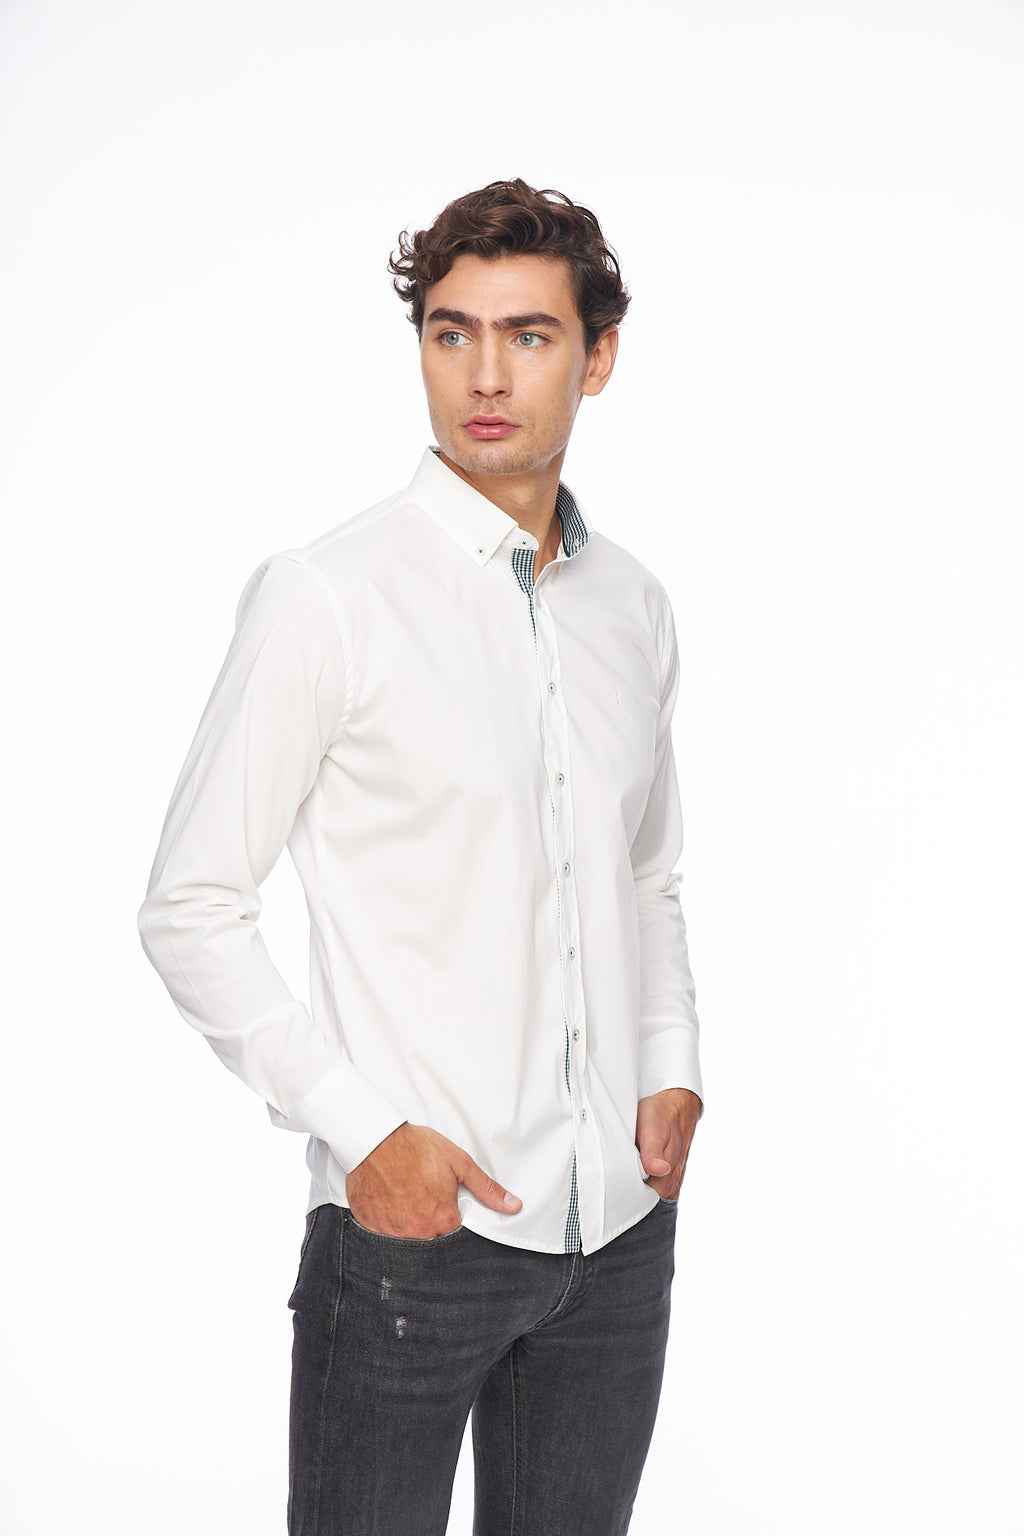 Мъжка бяла риза с копчета на яката и гарнитура каре на канона.